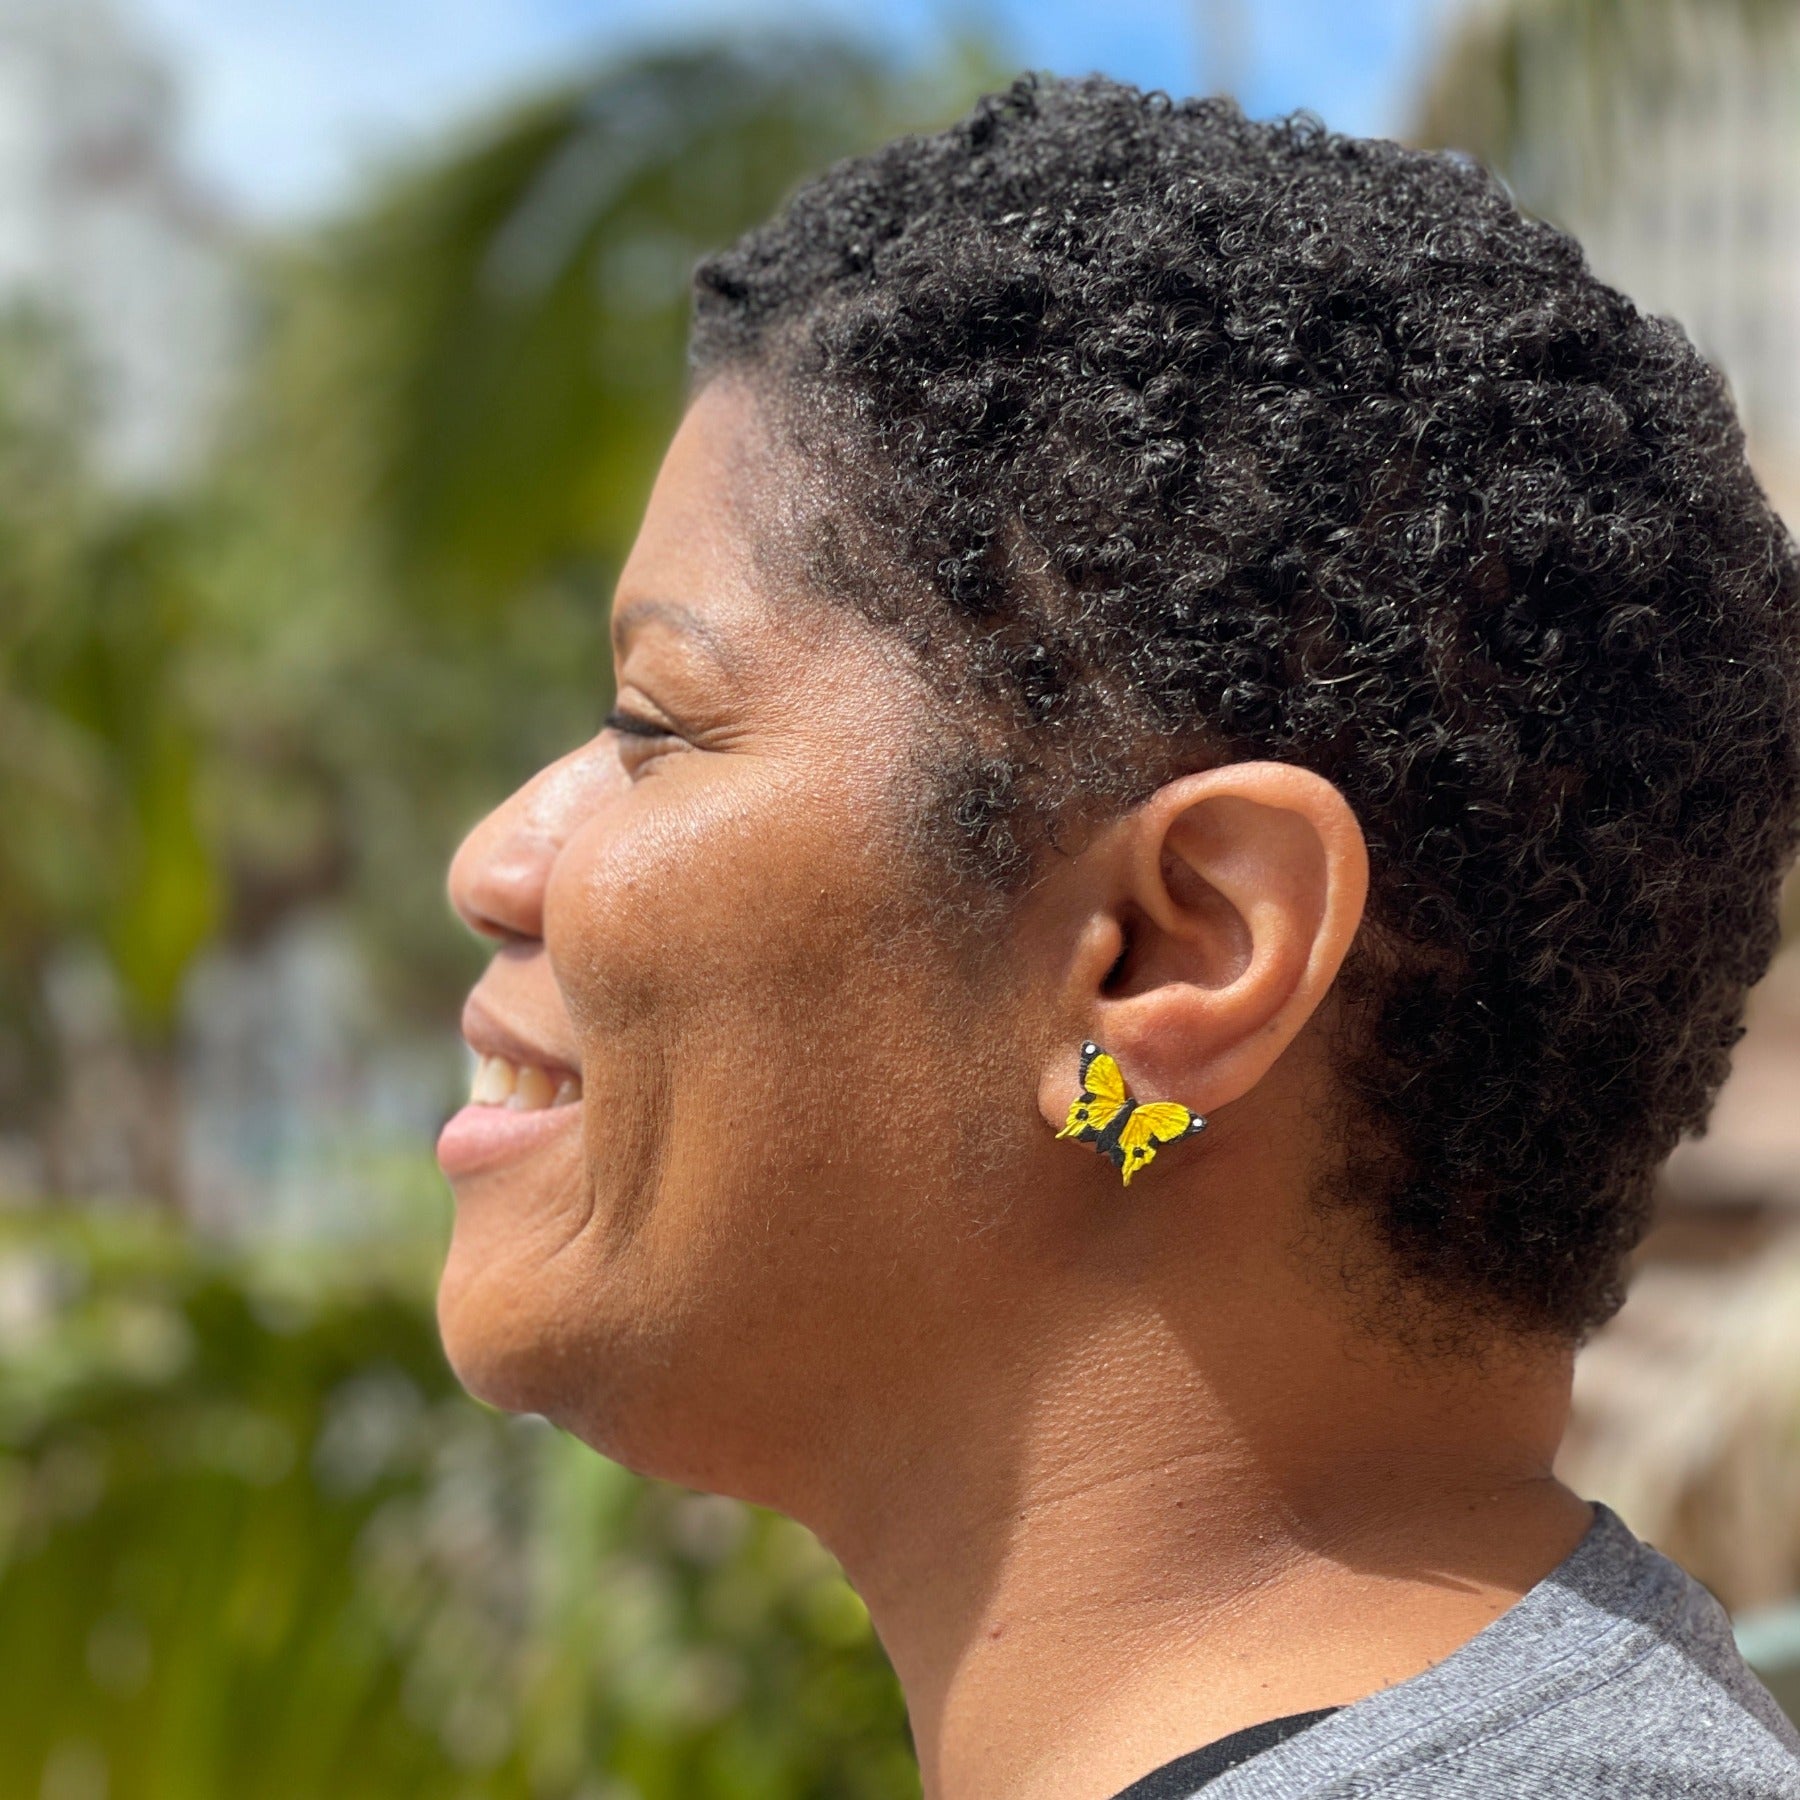 Model wearing yellow butterfly earring studs